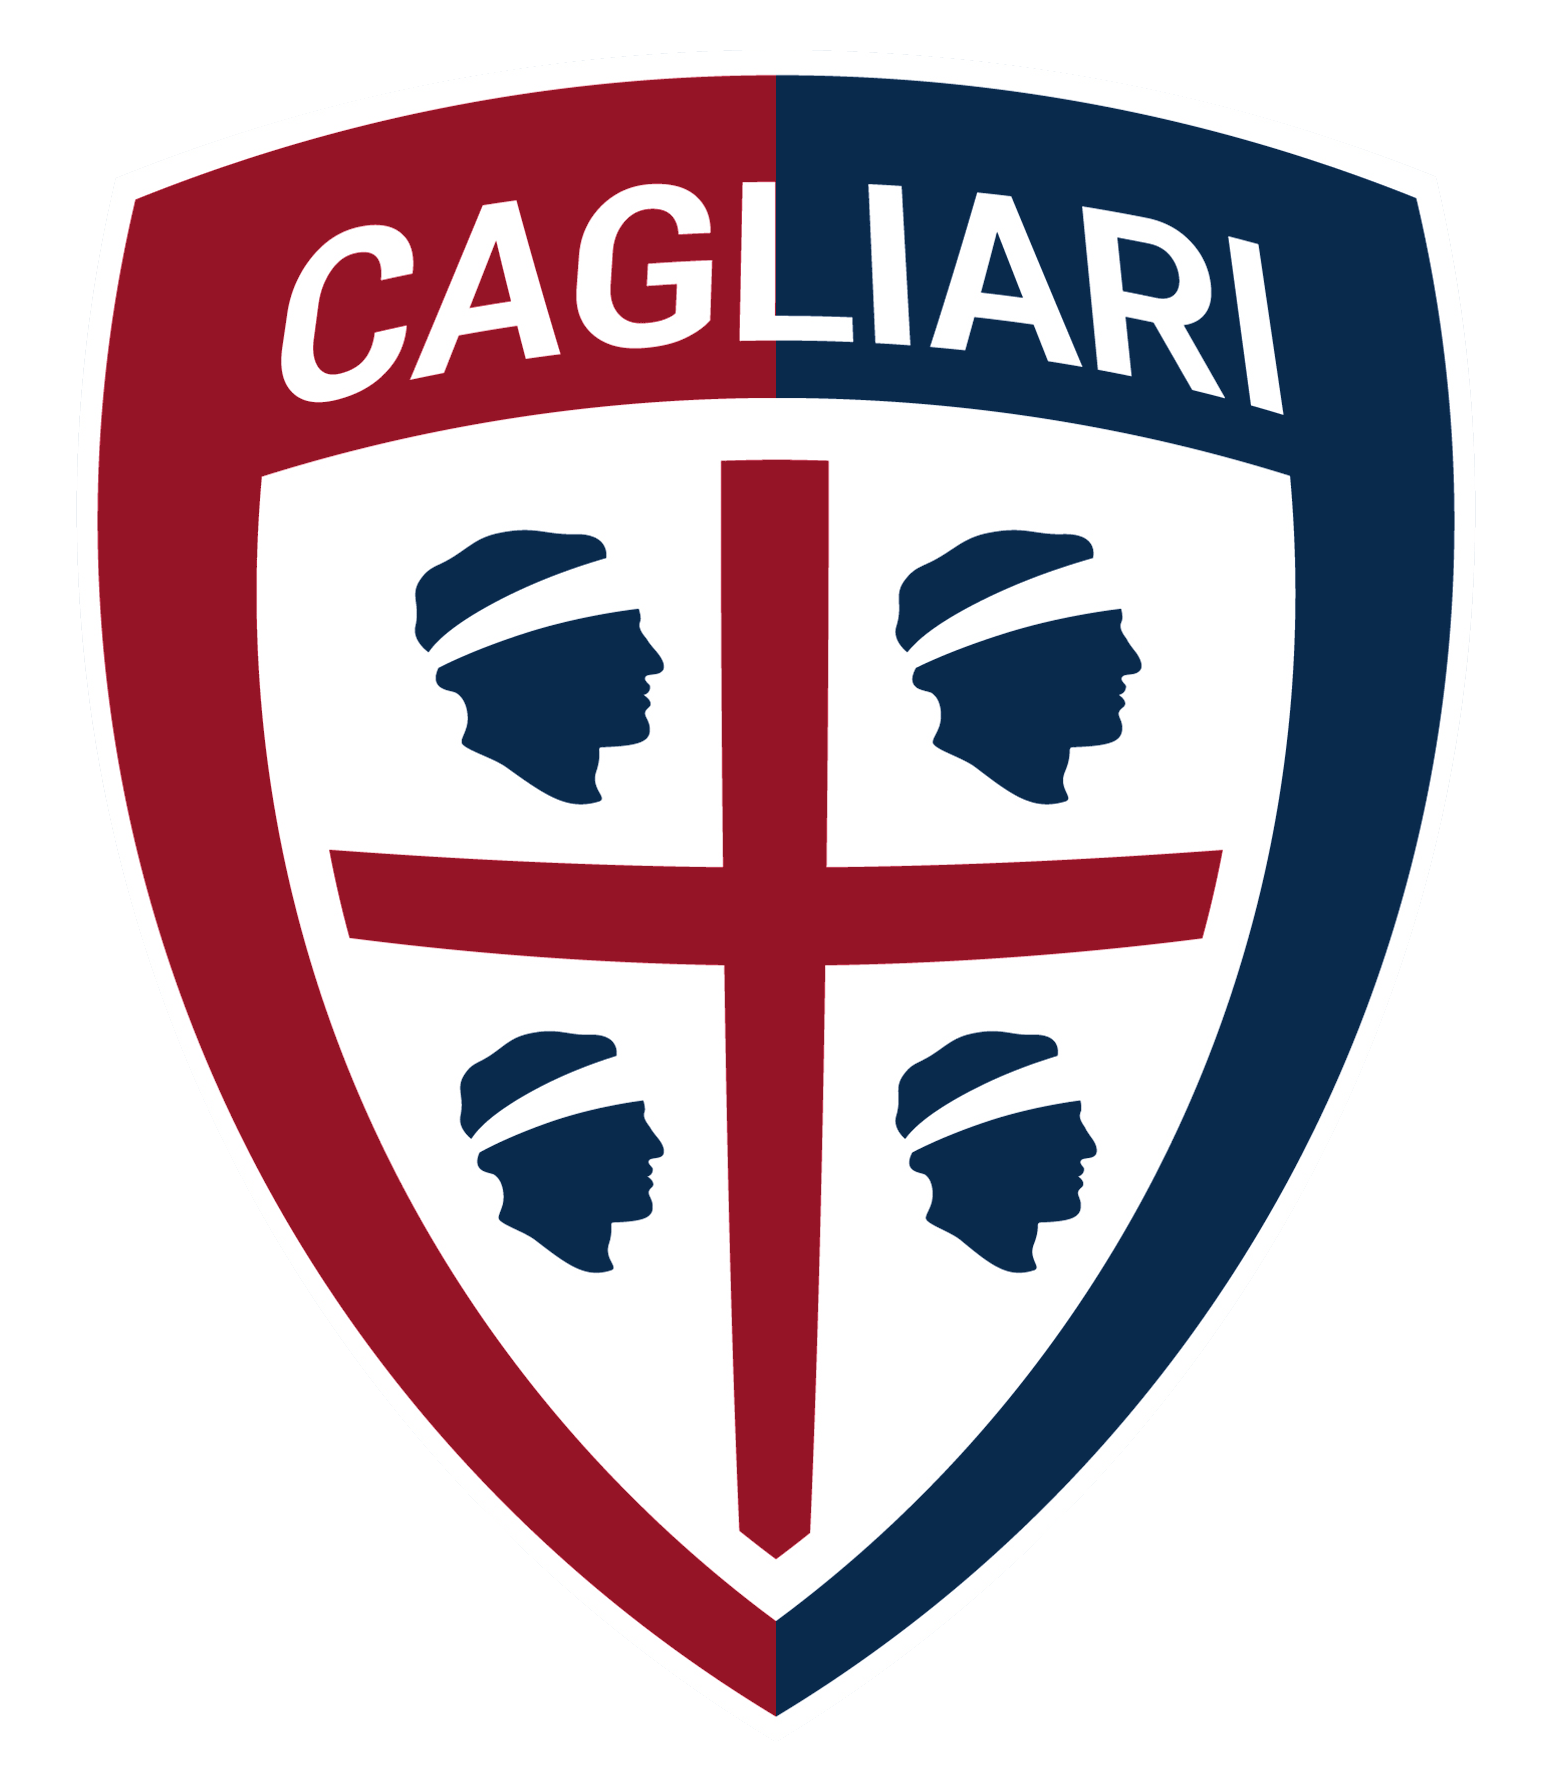 کالیاری (Cagliari)